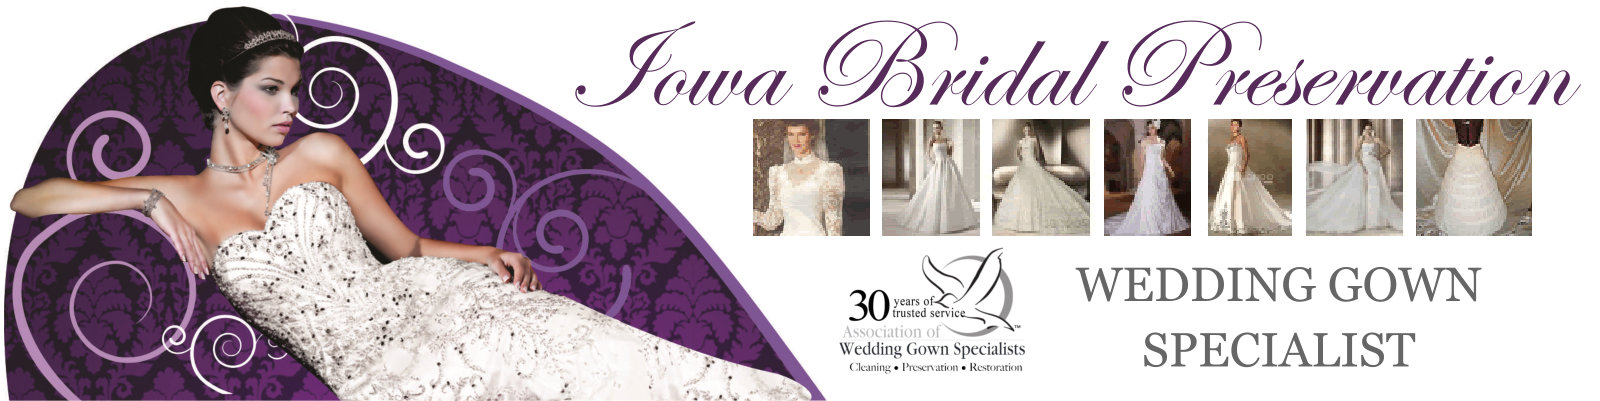 Cost Estimator - Iowa Bridal Preservation